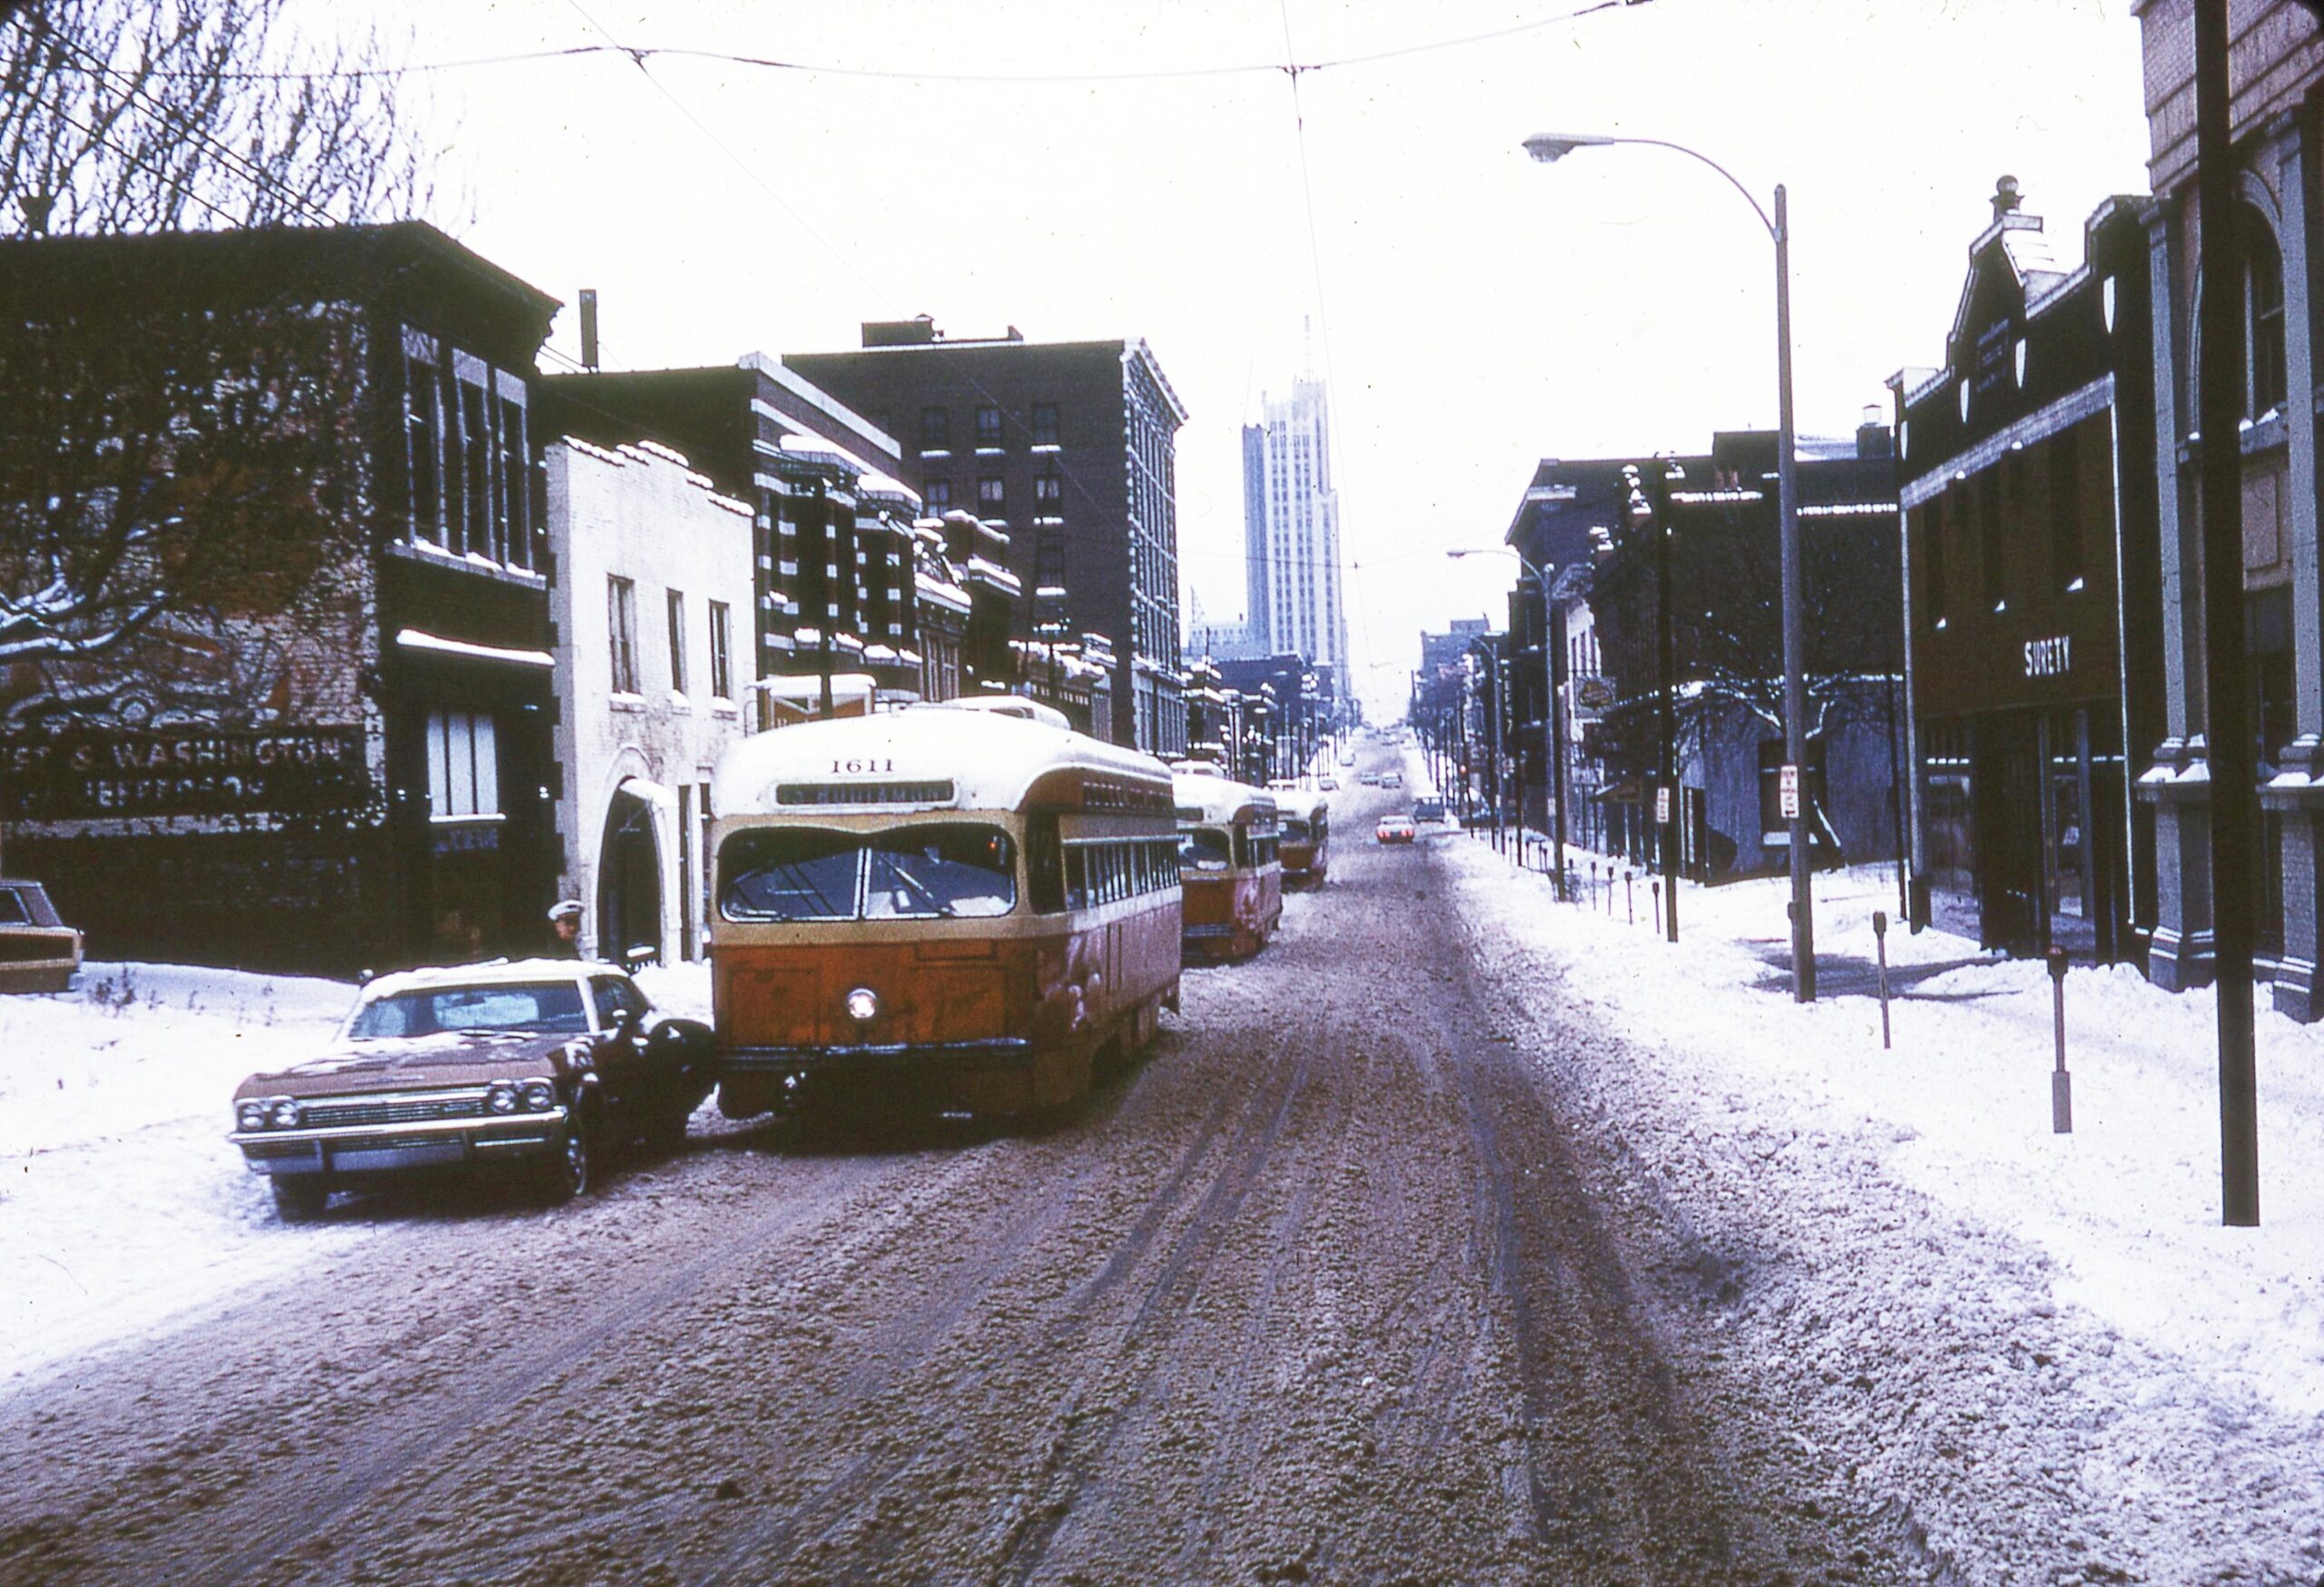 Saint Louis Public Service | Saint Louis, Missouri | PCC 1611 | Route 10 | Olive and Vandeventer Streets | January 1960 | Willard Thomas photograph